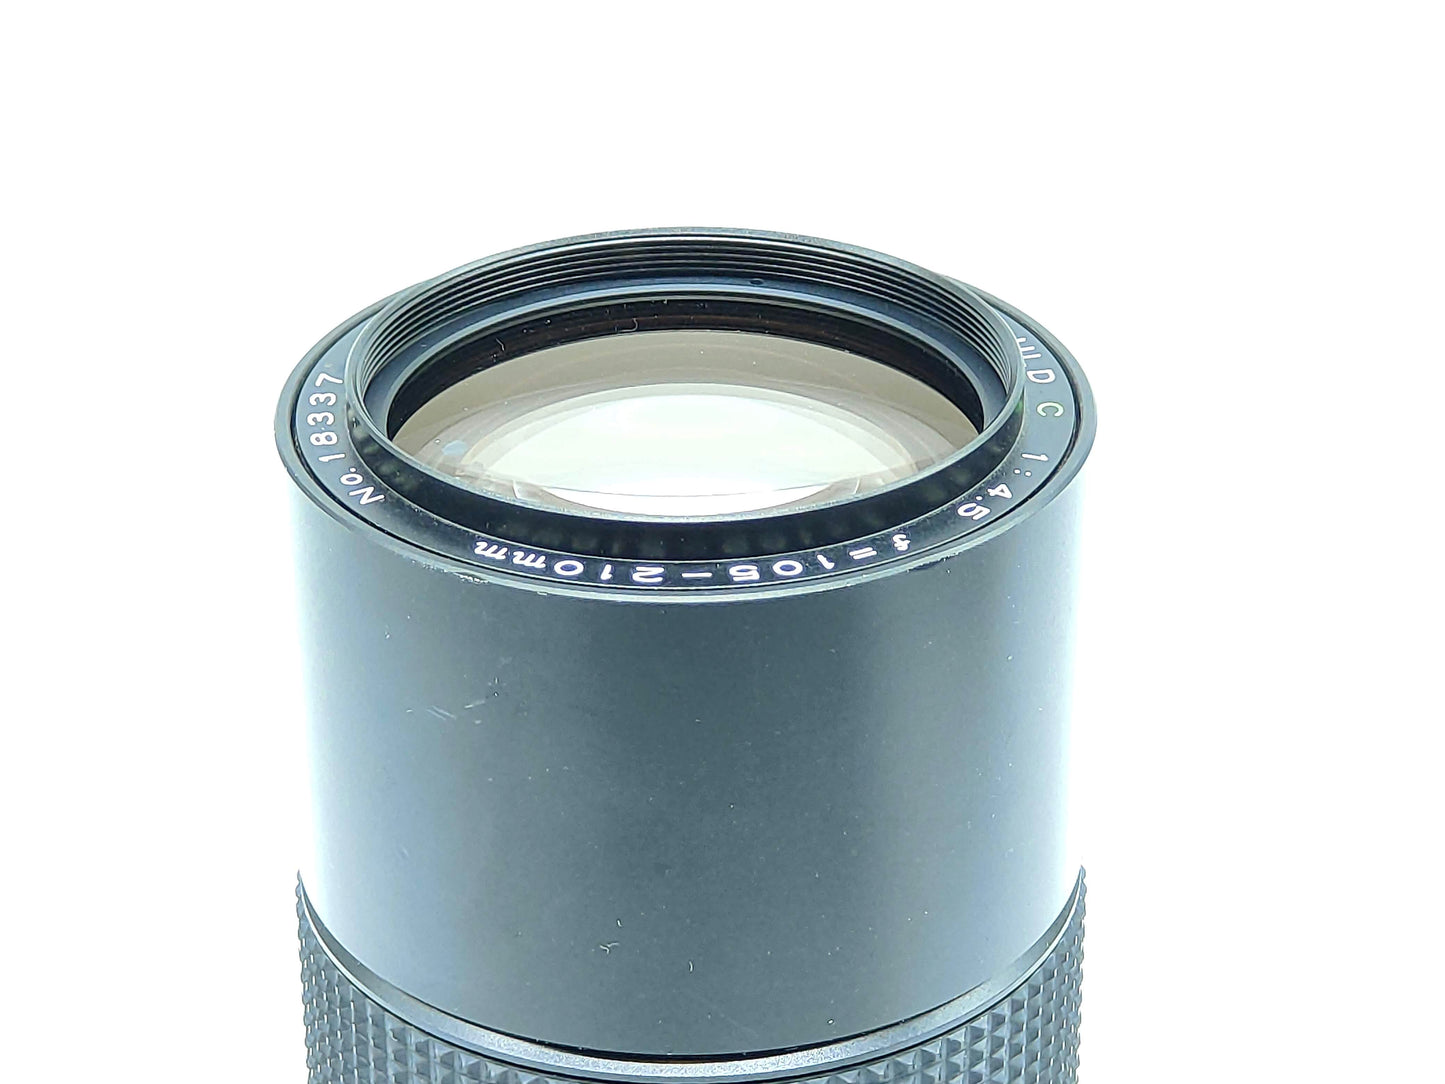 Mamiya 105-210mm f4.5 zoom lens for Mamiya 645 - as new condition